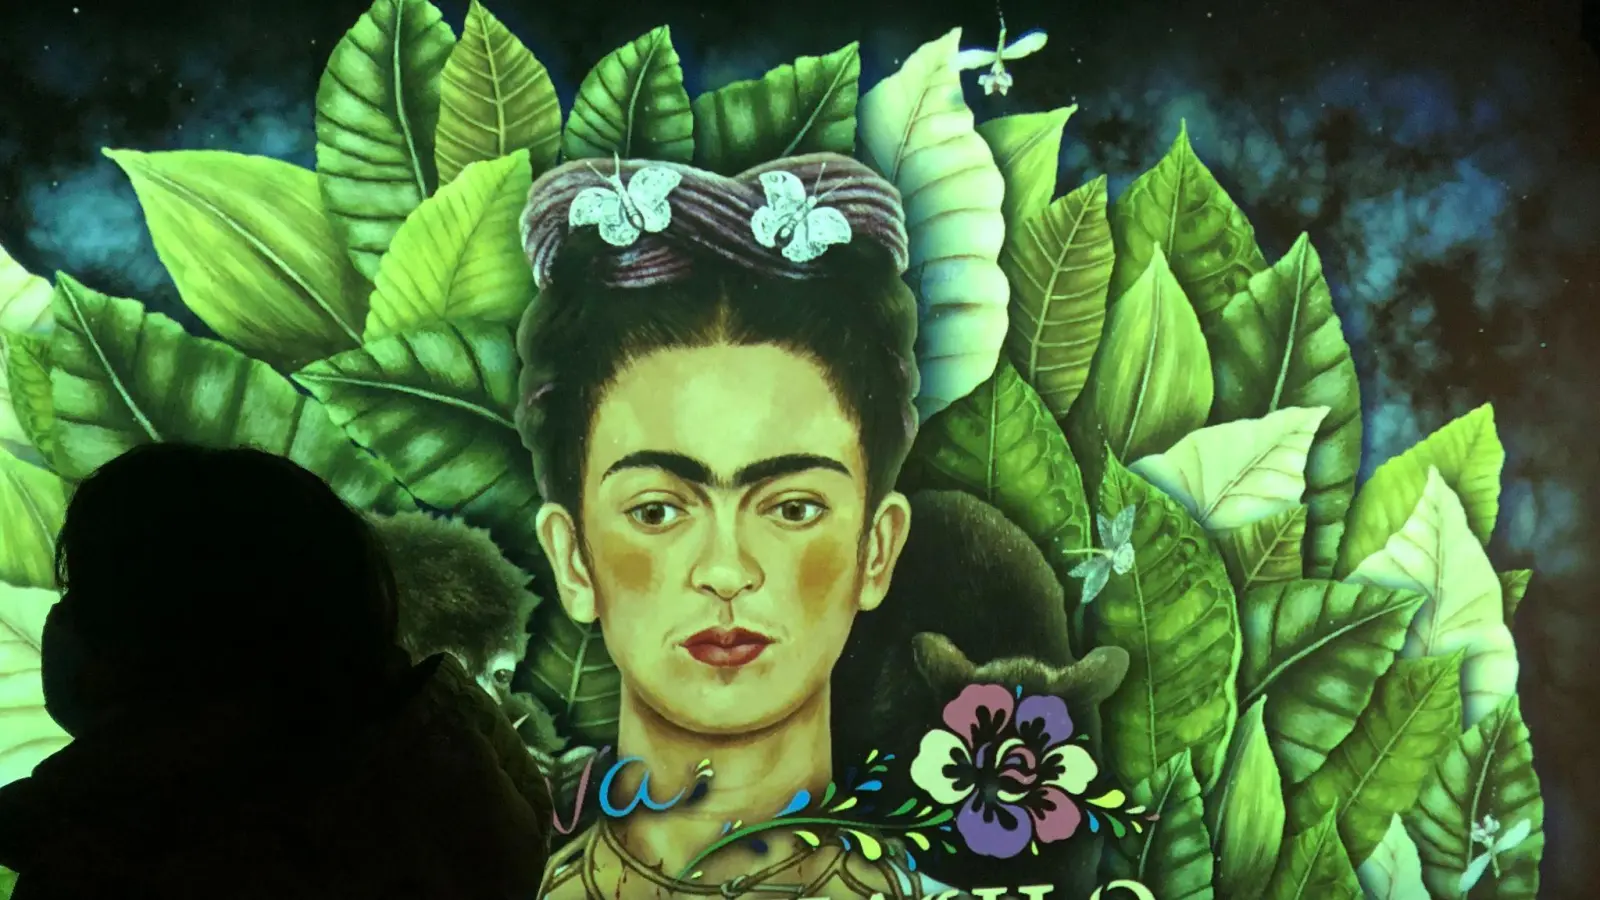 Kunstwerke der Künstlerin Frida-Kahlo werden in der „Viva Frida Kahlo“-Show von Projektoren an die Wände geworfen. (Foto: Christiane Oelrich/dpa/Archivbild)